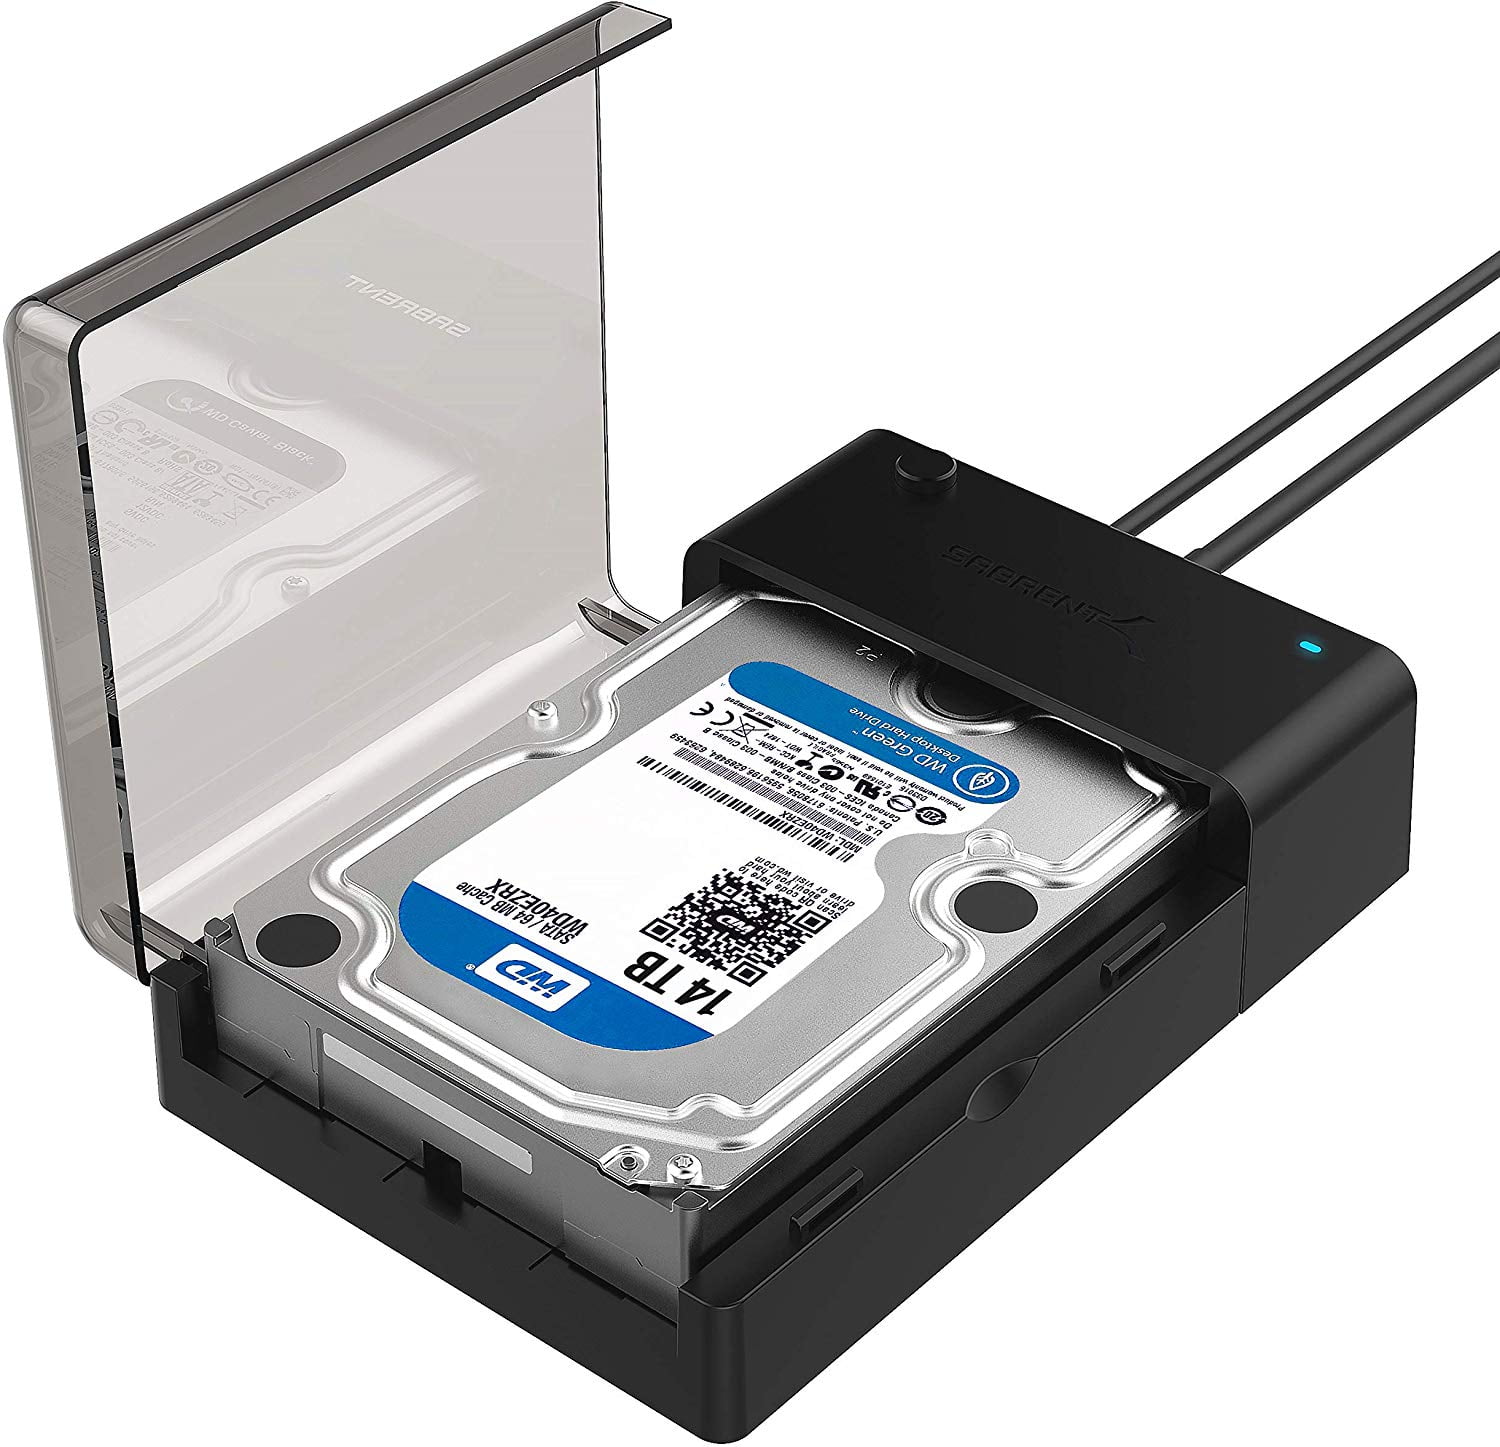 barbermaskine børste foretrække Sabrent USB 3.0 to SATA External Hard Drive Lay-Flat Docking Station for  2.5 or 3.5in HDD, SSD [Support UASP] (EC-DFLT) - Walmart.com